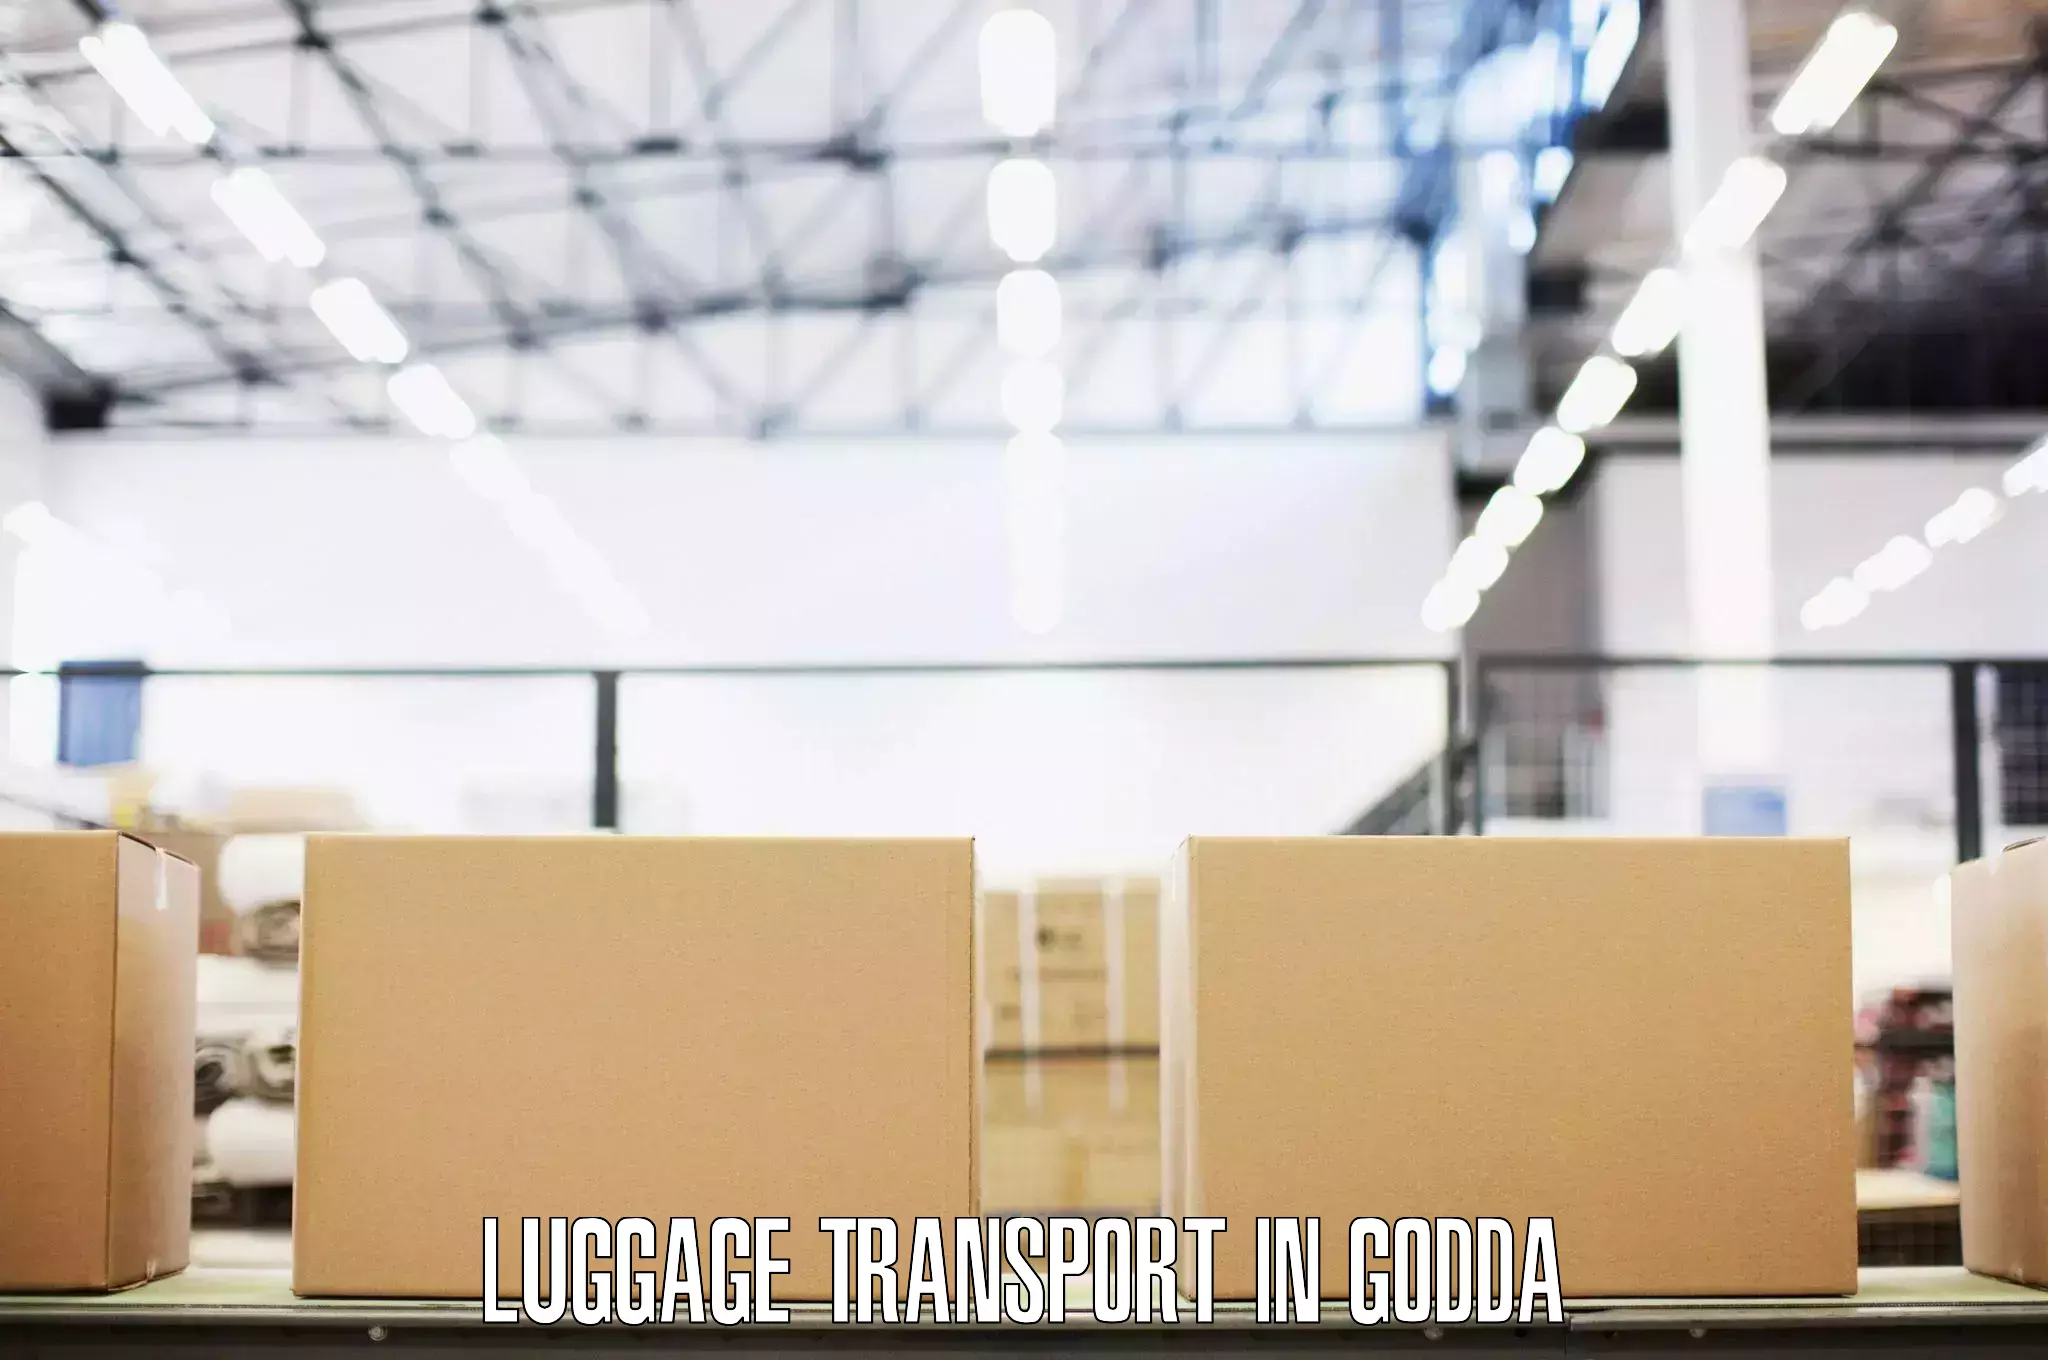 Baggage transport updates in Godda